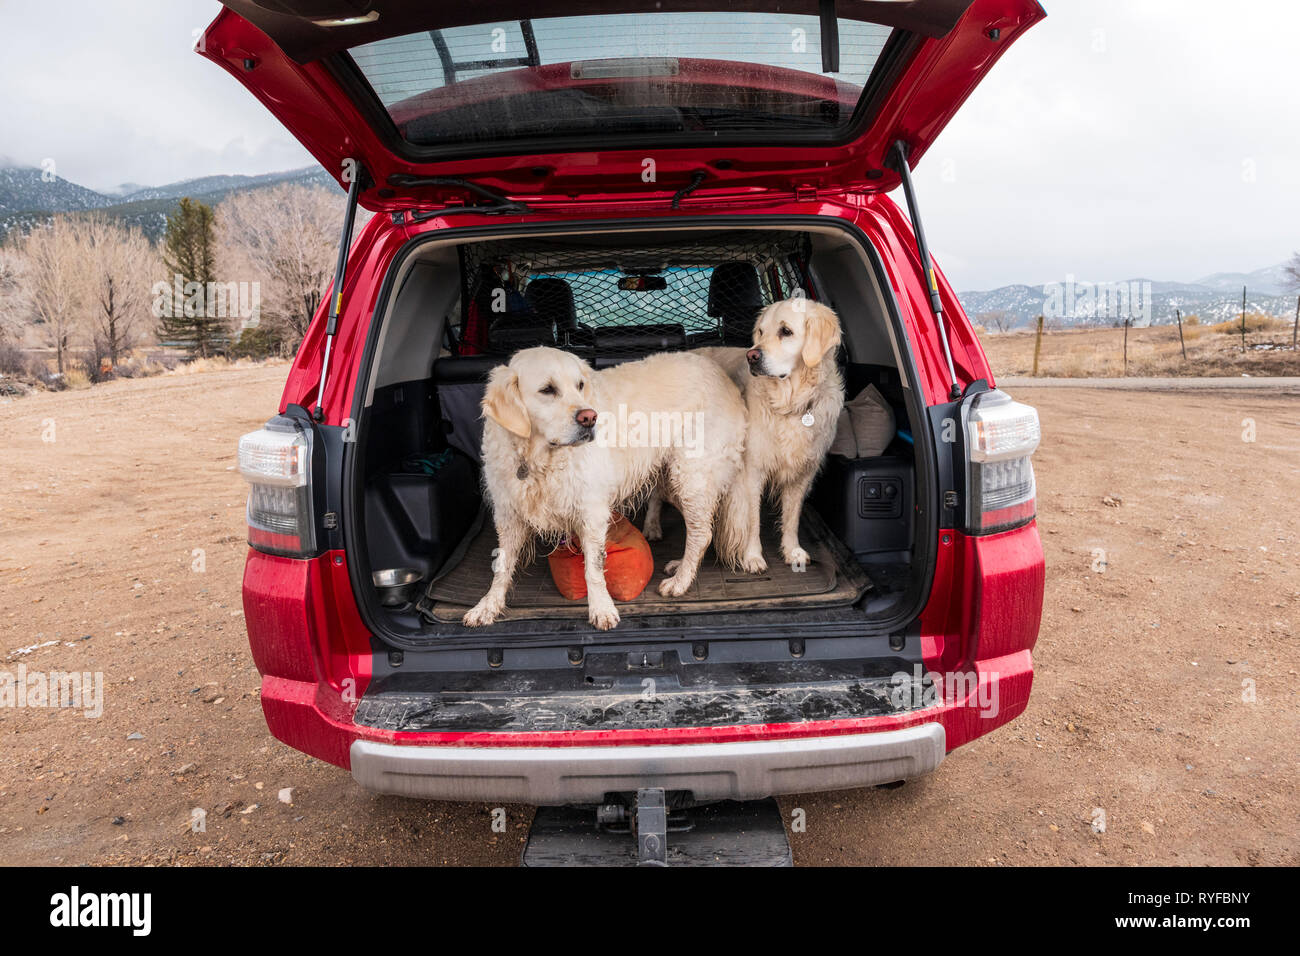 Deux chiens Golden Retriever de couleur platine à l'arrière d'un camion VUS Toyota 4Runner ; centre du Colorado, USA Banque D'Images